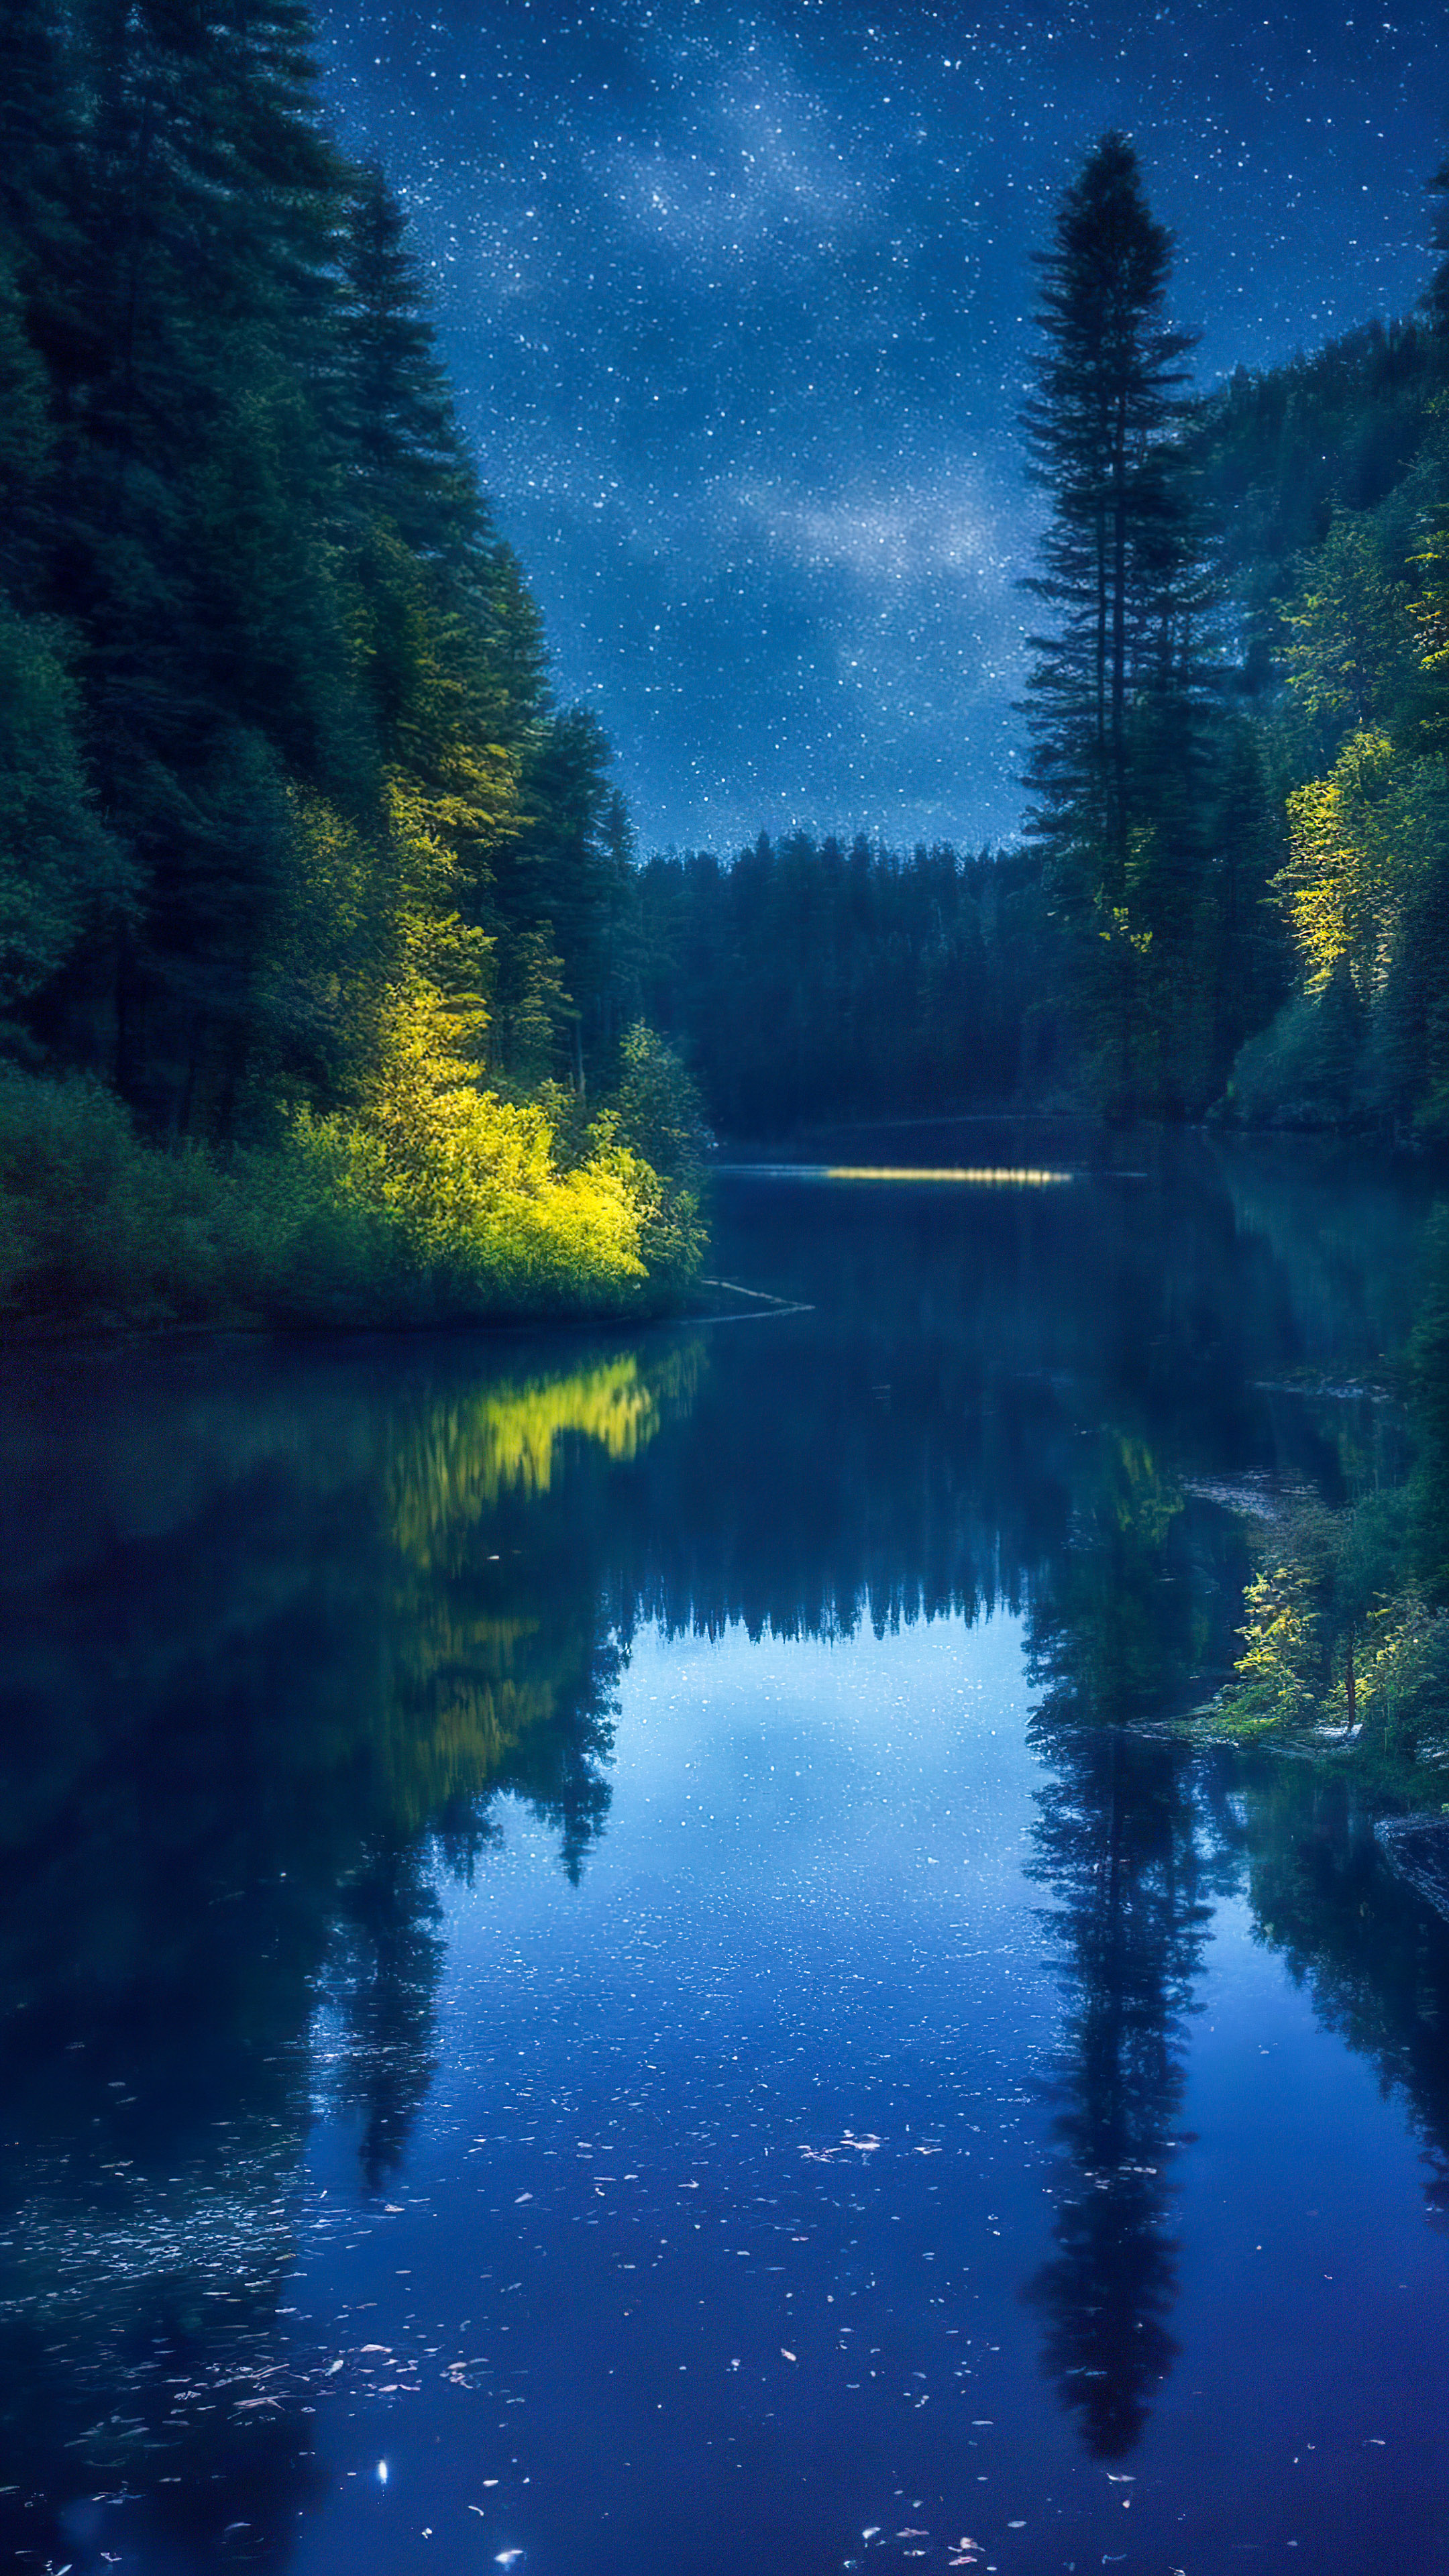 Perdez-vous dans la sérénité avec notre arrière-plan pour mobile, présentant une rivière paisible serpentant à travers une forêt dense la nuit, reflétant le ciel nocturne scintillant.